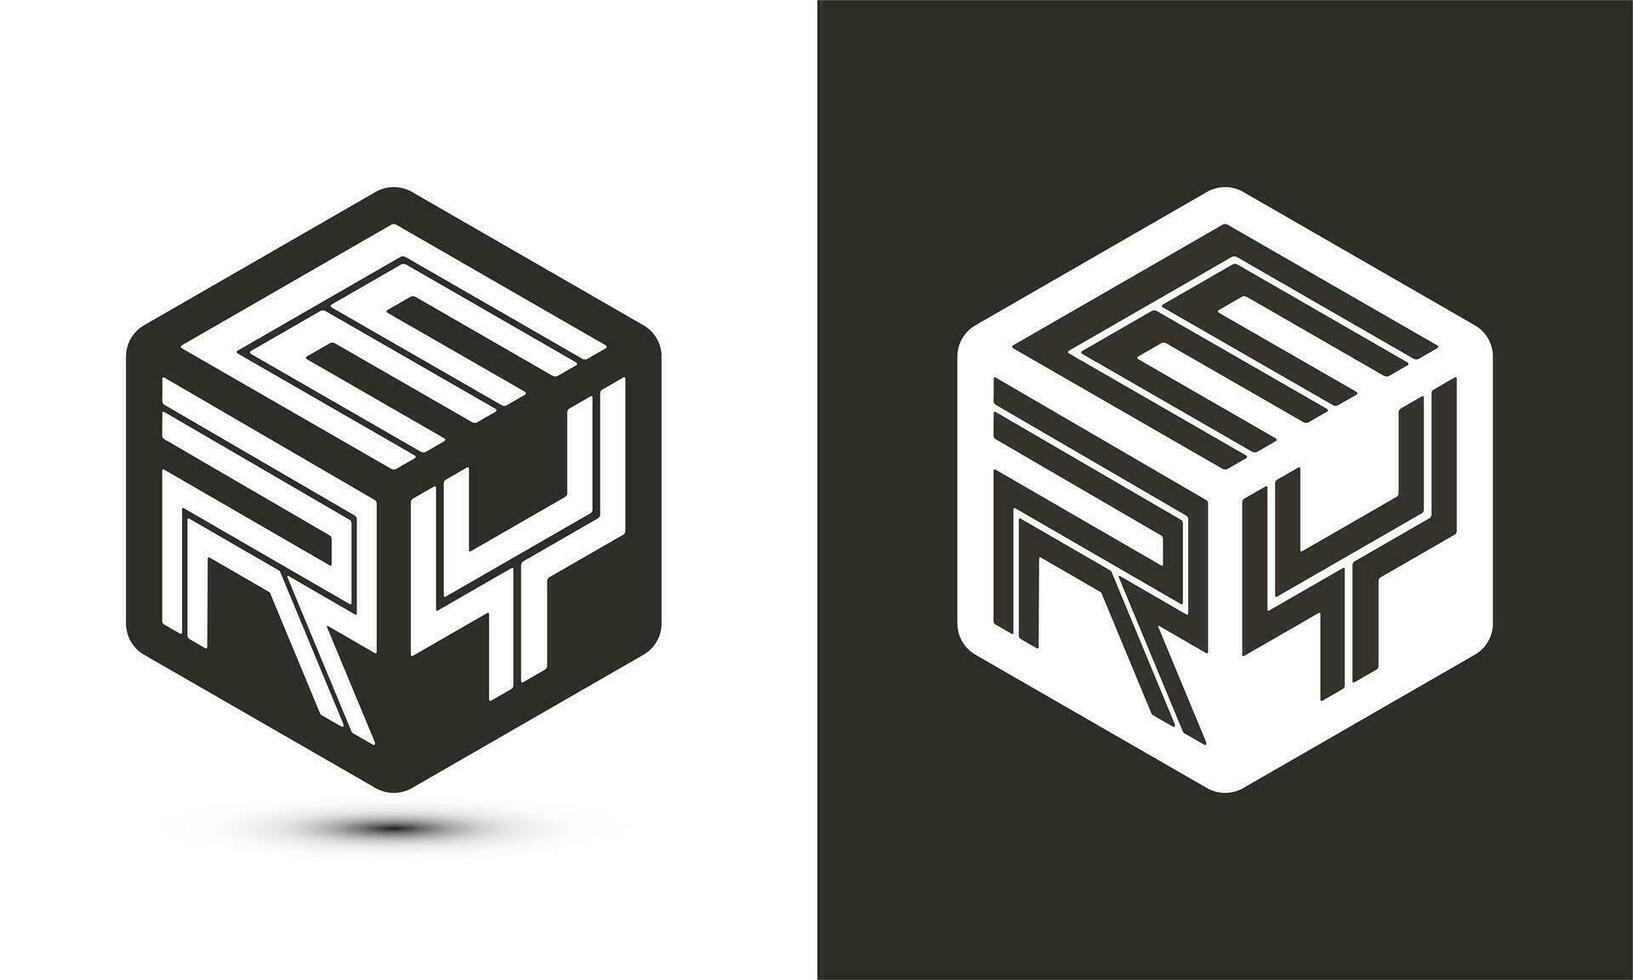 ery brief logo ontwerp met illustrator kubus logo, vector logo modern alfabet doopvont overlappen stijl.